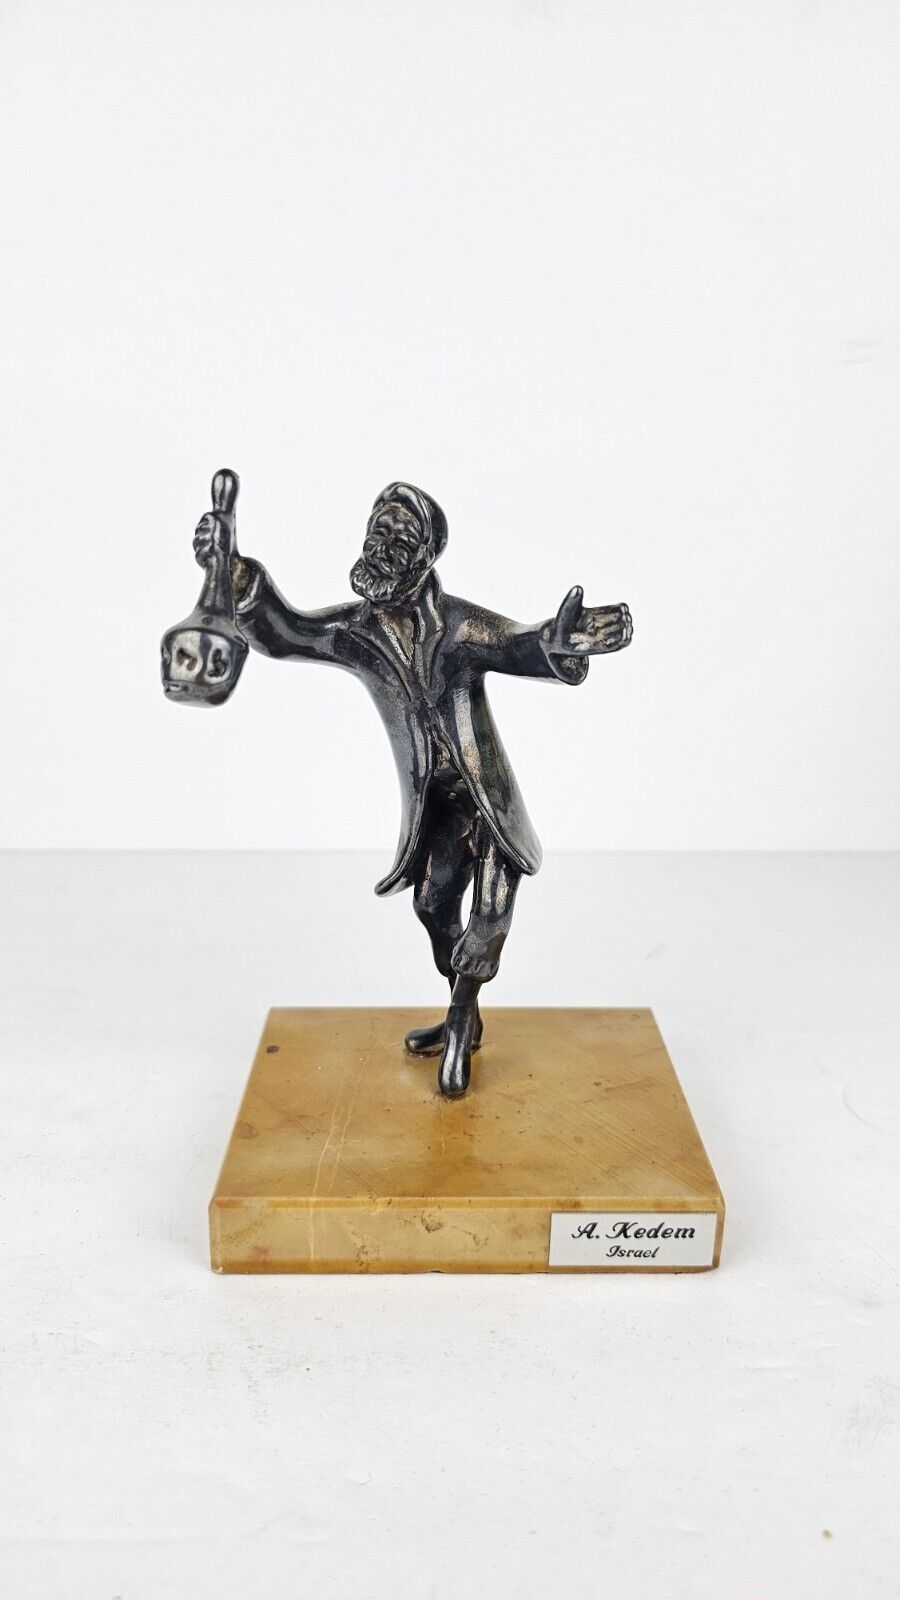 Vintage A. KEDEM Israel Sterling Silver Dancing Man Sculpture .925